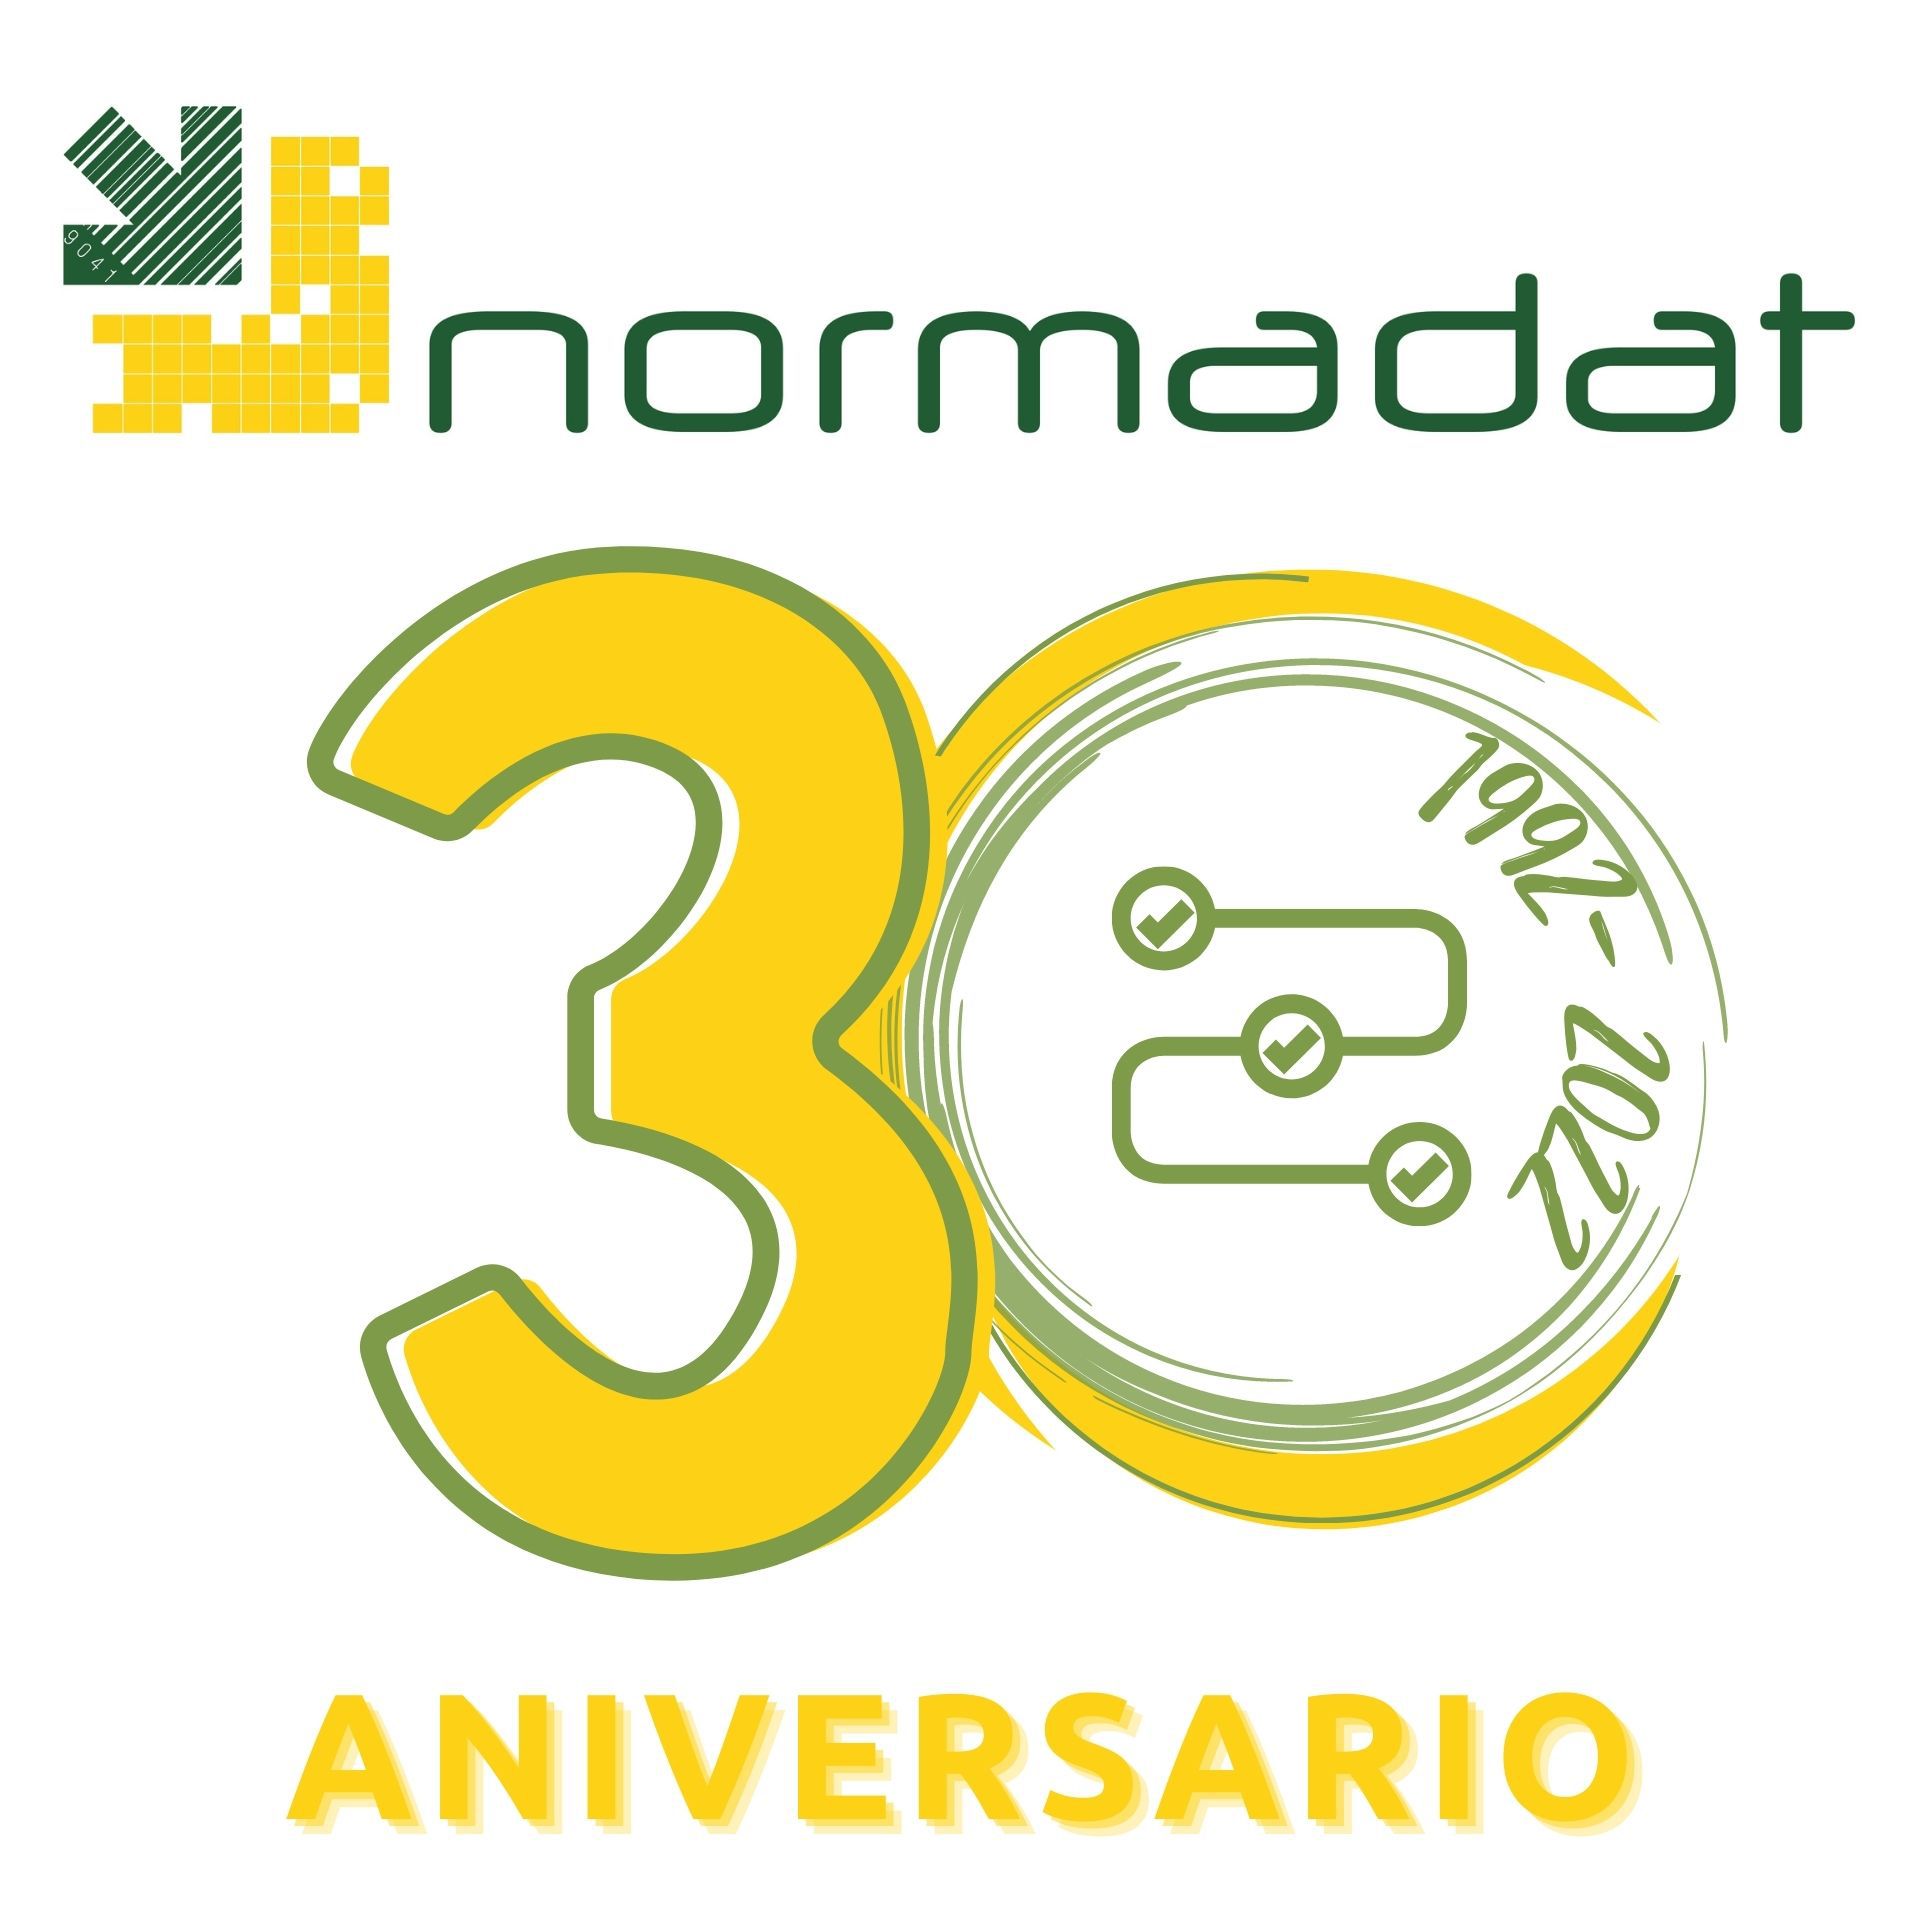 Normadat, proveedor homologado de TIC Negocios, cumple 30 años en el mercado